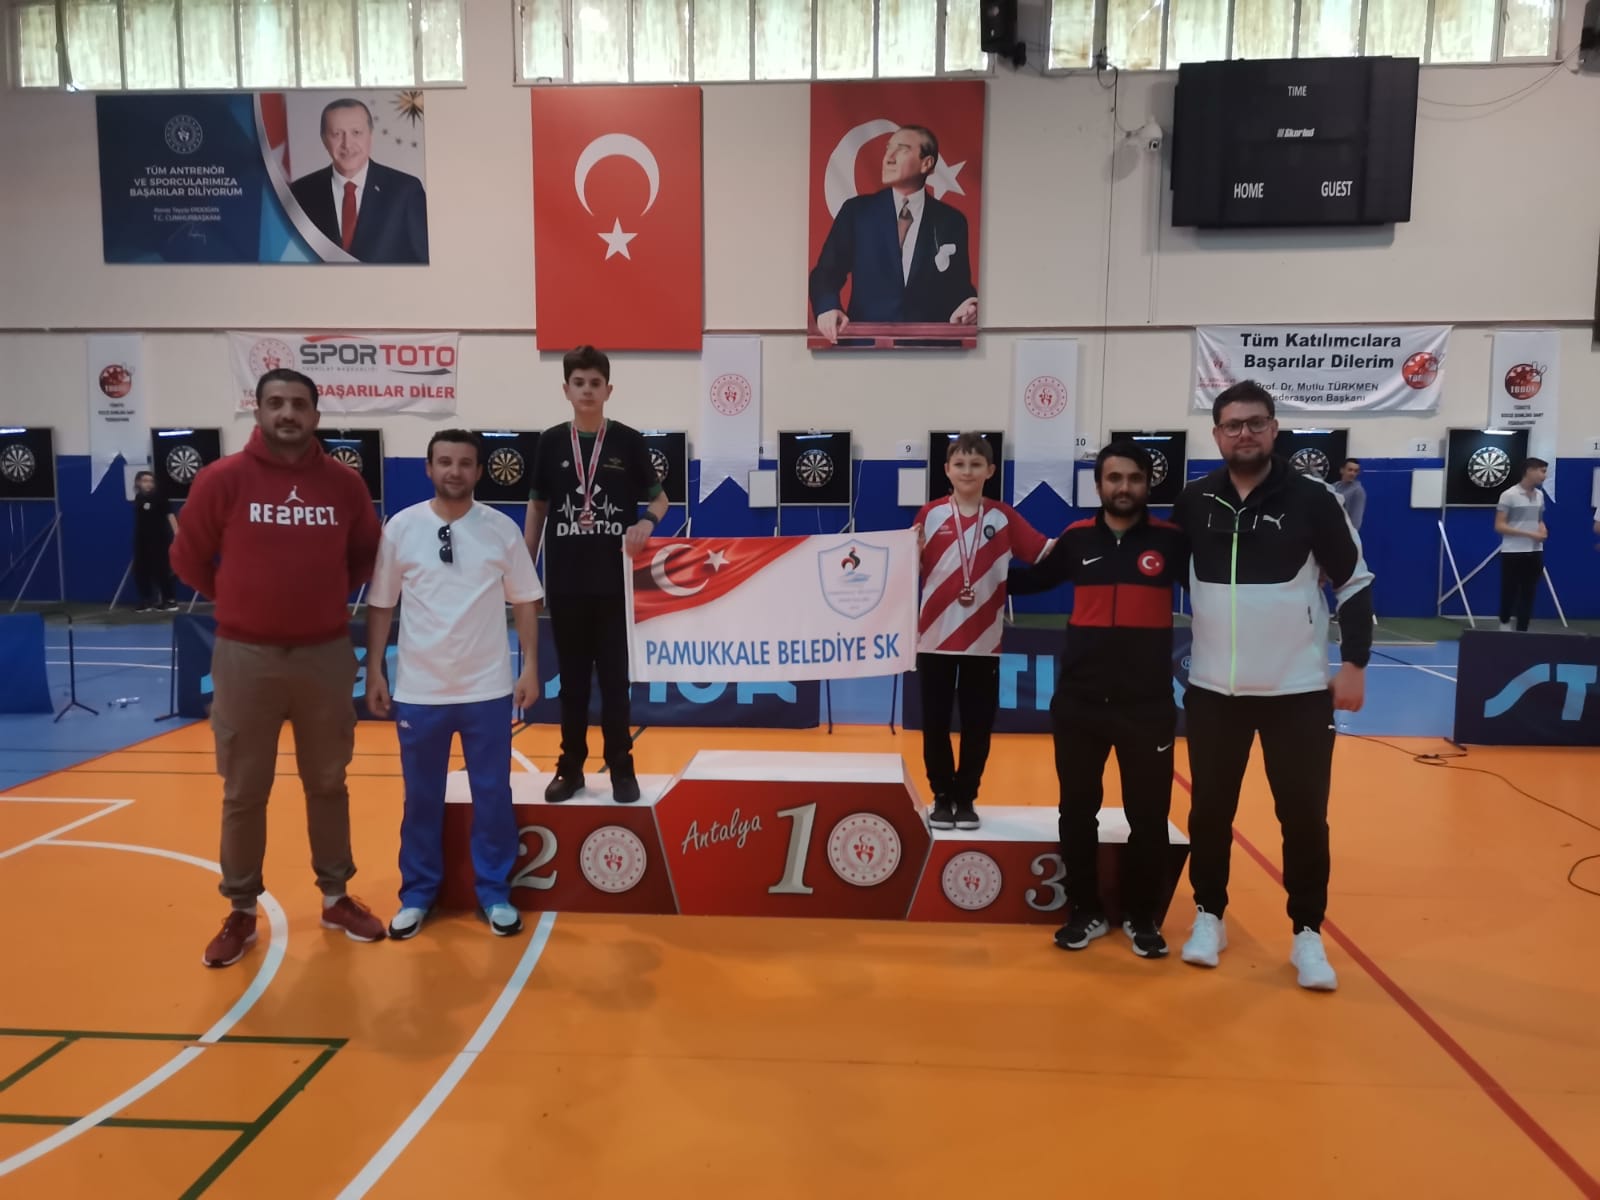 Pamukkale Belediyesporlu dartçılar, mücadele ettiği 2022 – 2023 Sezonu Şehit Eren Bülbül Türkiye Dart Şampiyonası Sıralama Turları 5. Ayak ve Ustalar turnuvasından mutlu ayrıldı.  Mavi-beyazlı kulübün sporcuları, 5. Ayak turnuvasında 7 altın, 5 gümüş ve 9 bronz olmak üzere toplam 21 madalya ve 5 kupa kazandı. Sezon genelinde Pamukkale Belediyespor 53 madalya kazanmış oldu.